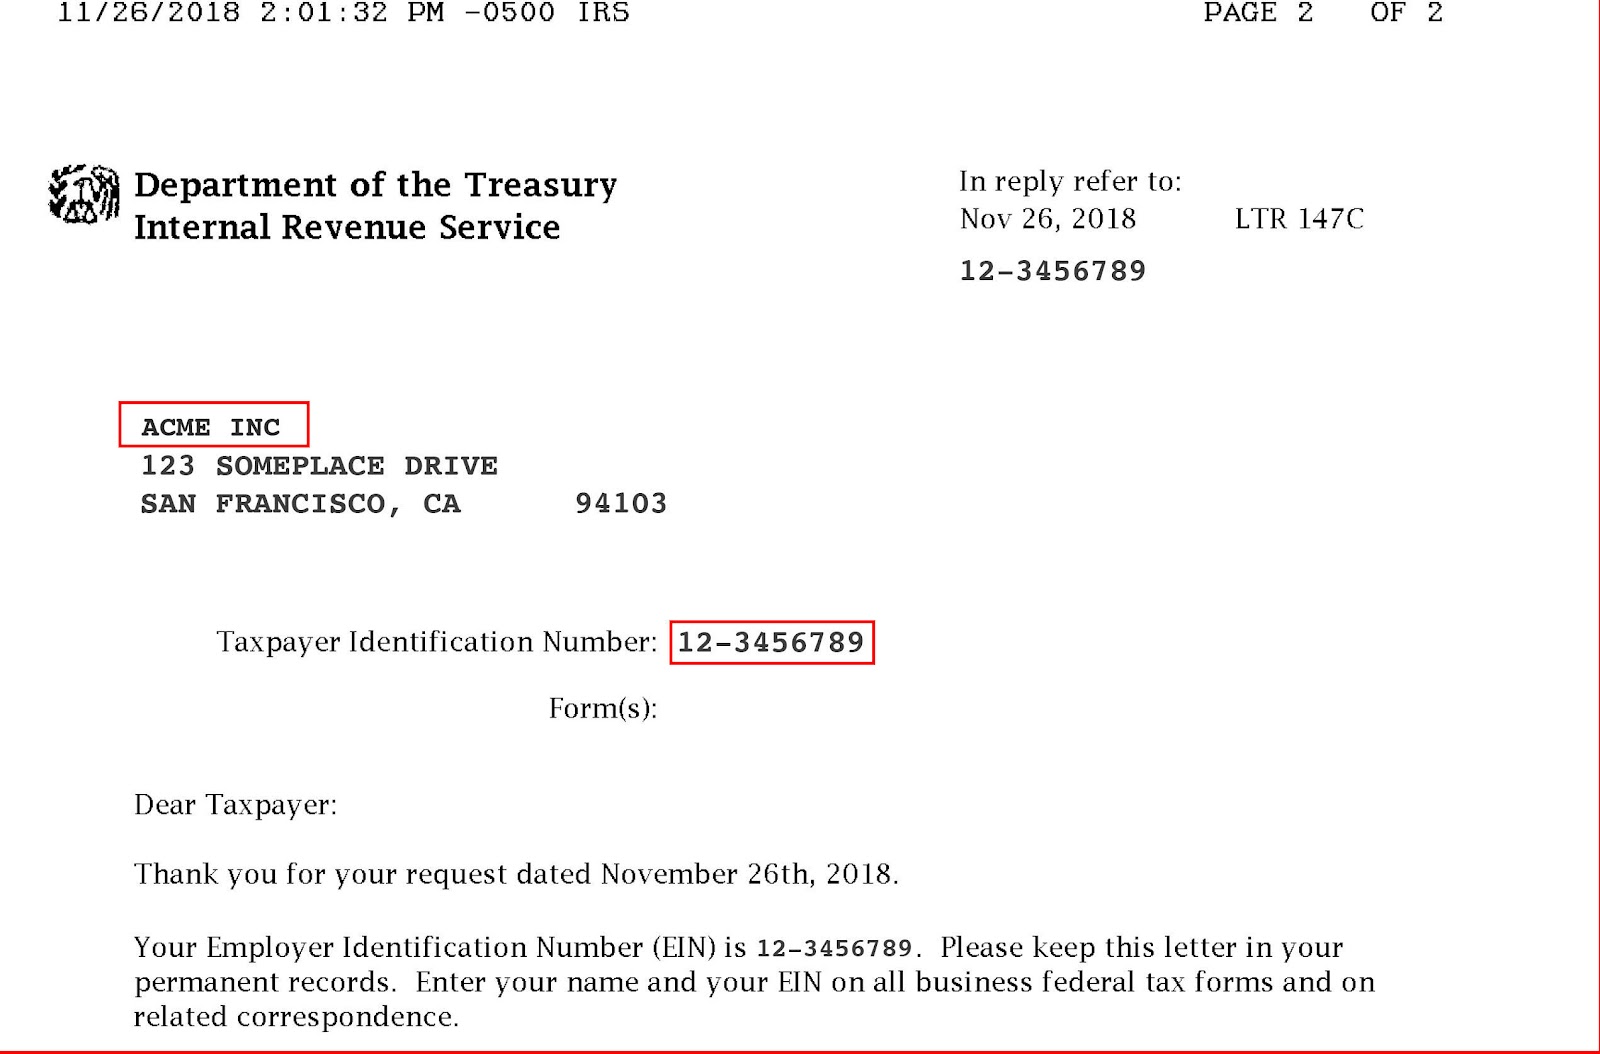 Lettera 147C dell'IRS con il nome dell'azienda e il numero di identificazione del contribuente evidenziati